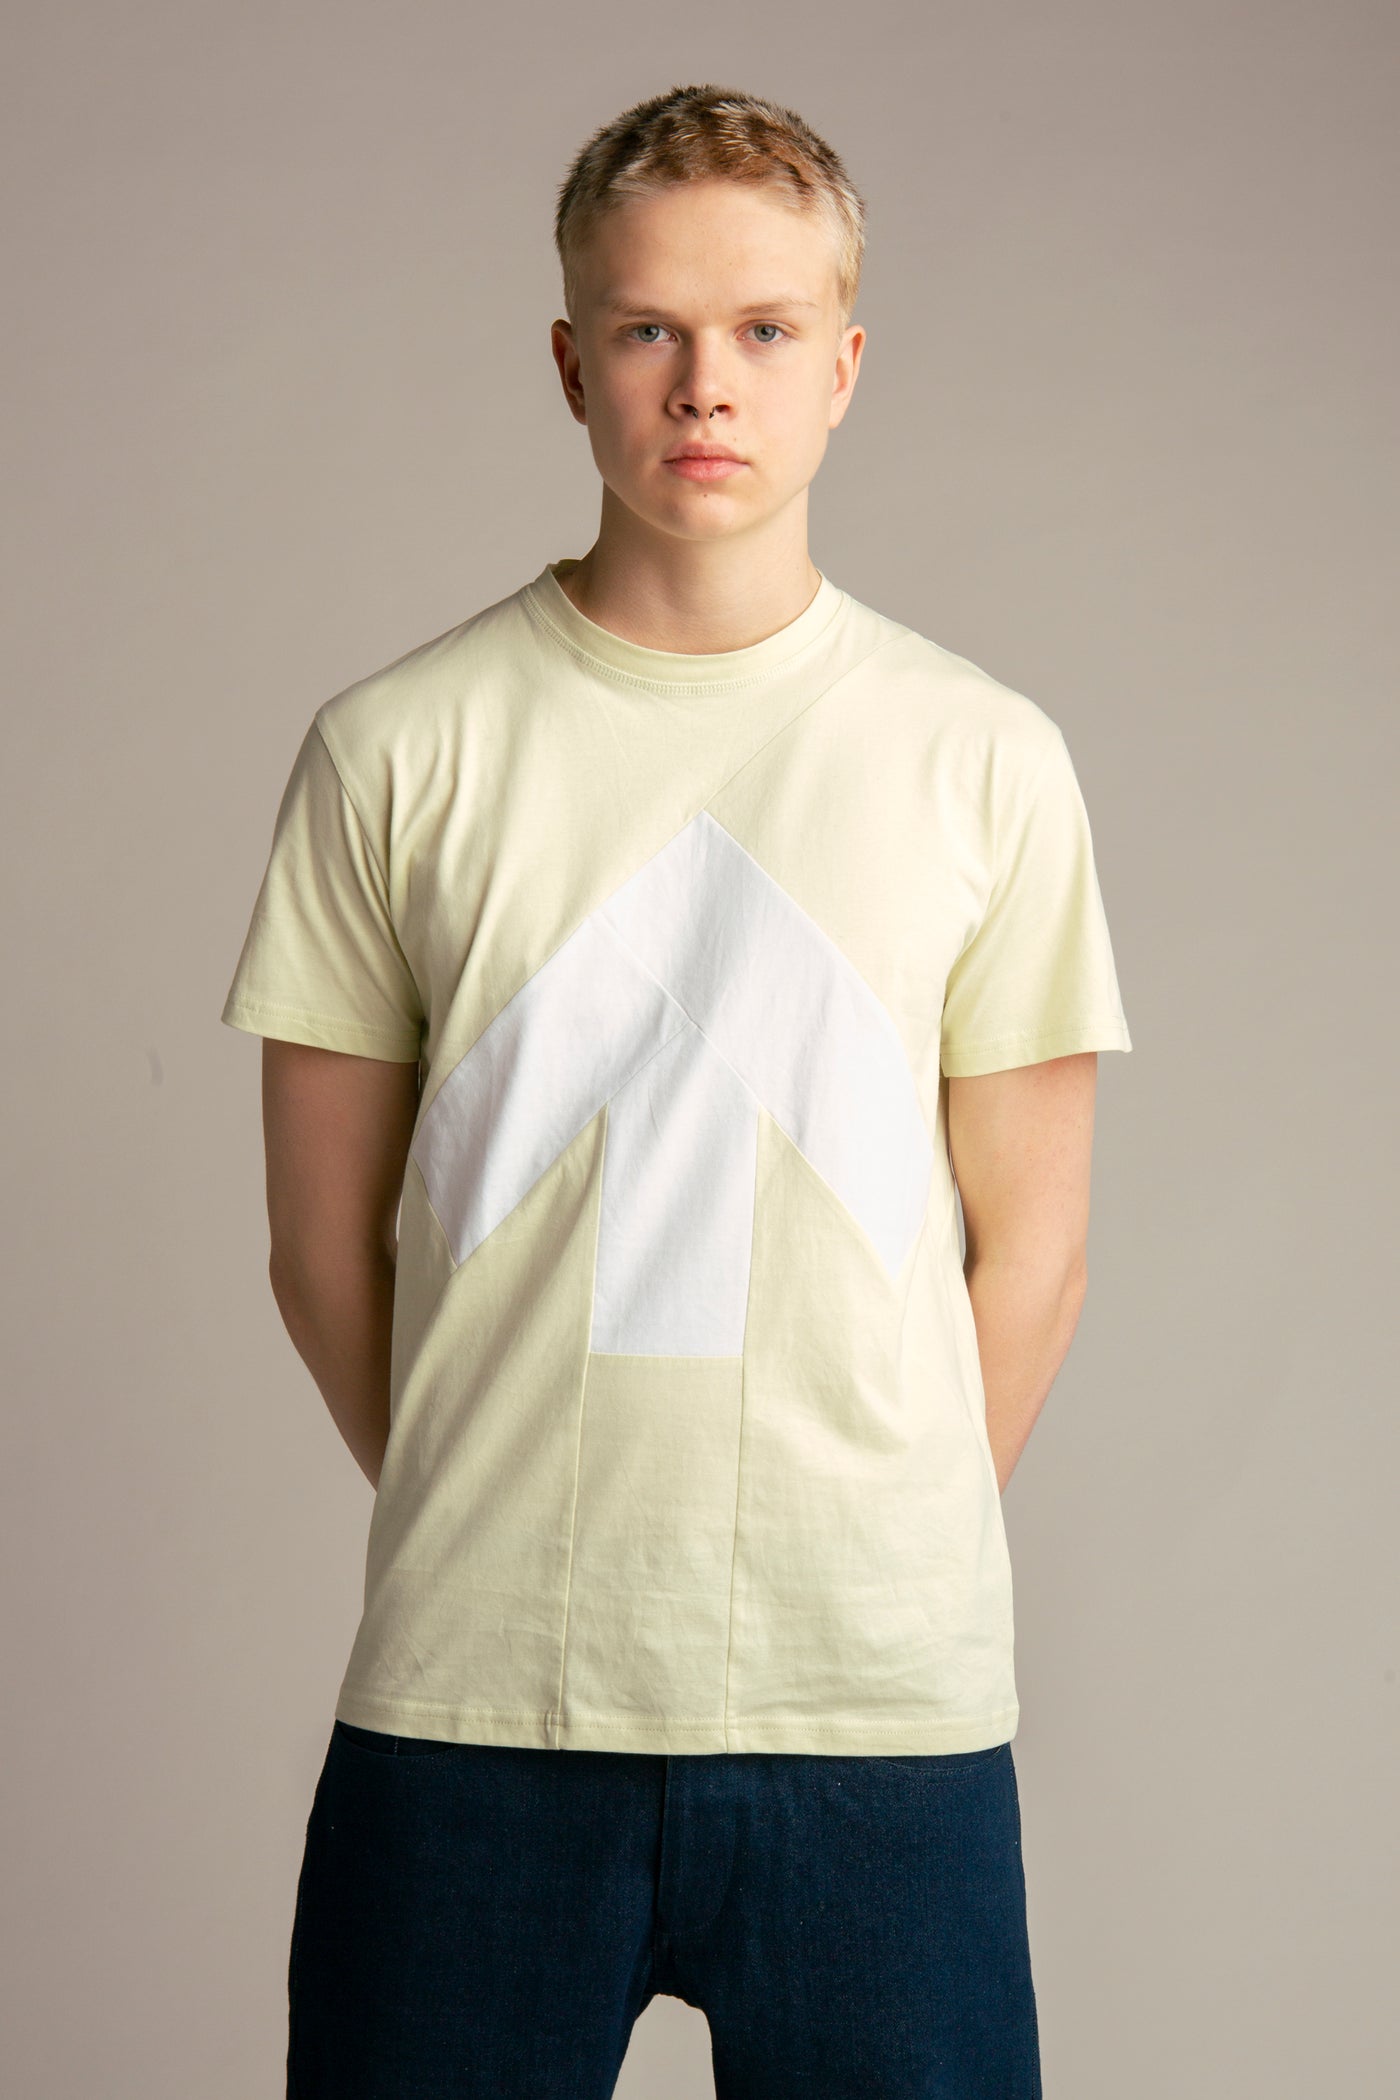 Up-shirt for men | Light green, white